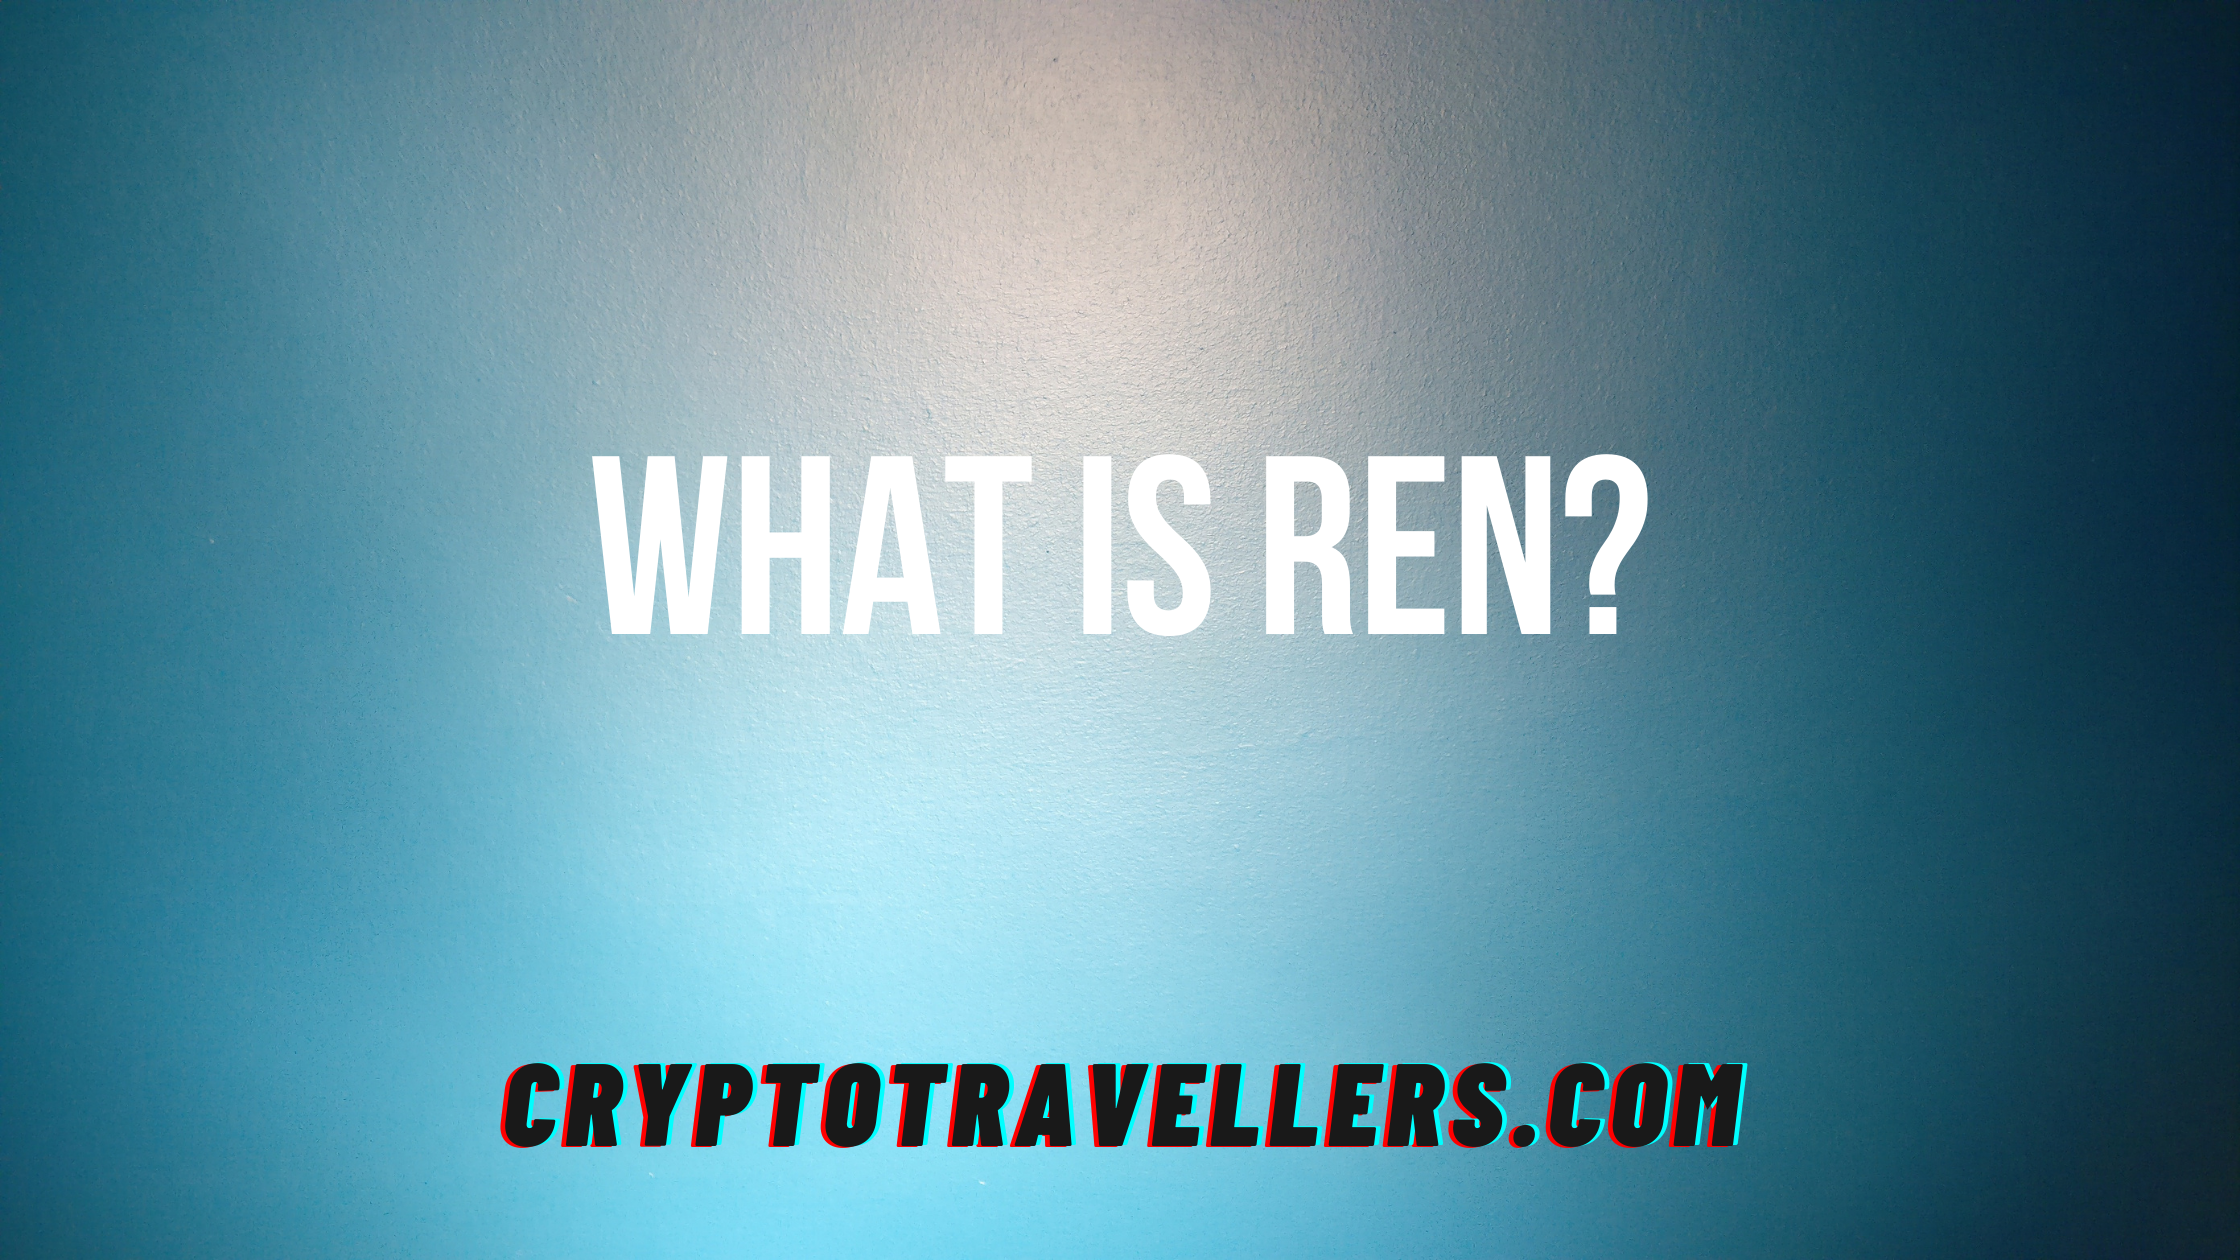 What is Ren?